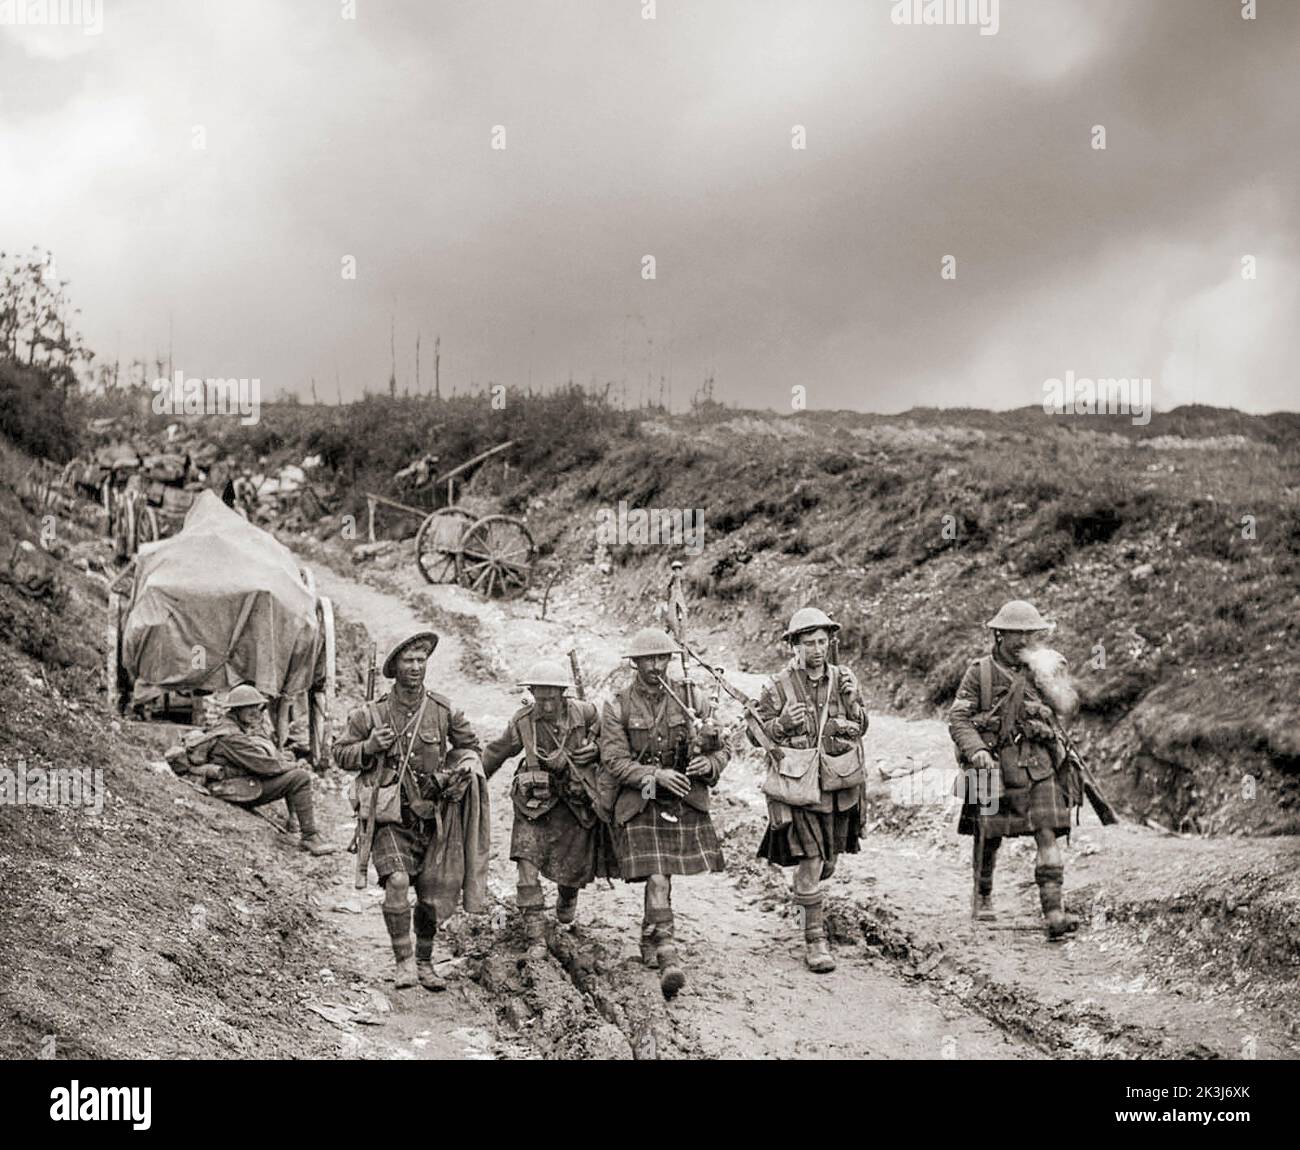 Un joueur de cornemuse des 7th Seaforth Highlanders conduit quatre hommes de la Brigade 26th de retour des tranchées après l'attaque sur Longueval pendant la bataille de la somme sur le front occidental de 1916 pendant la première Guerre mondiale. Banque D'Images